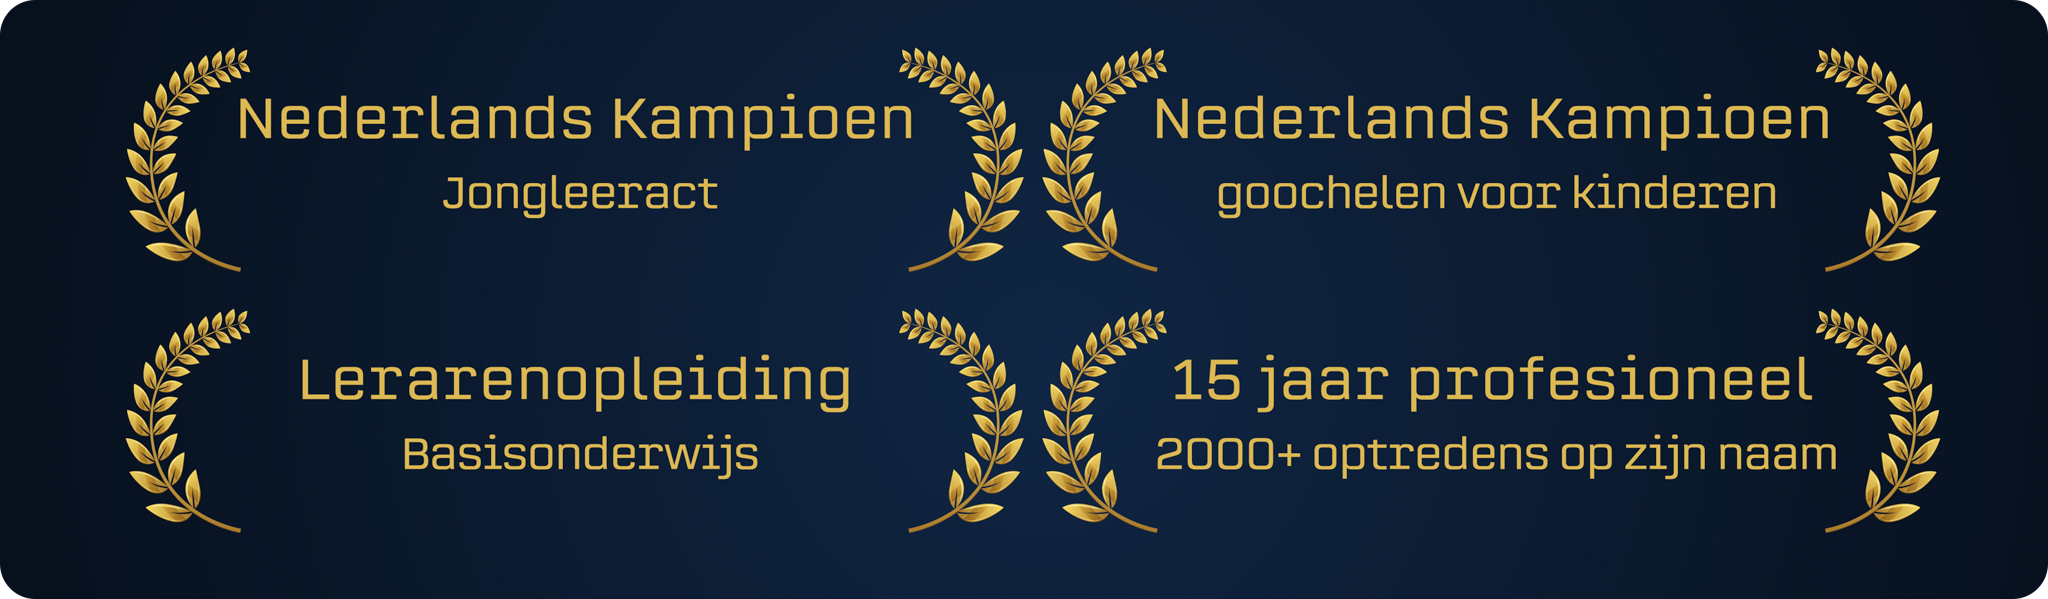 Nederlands Kampioen Huub Cooijmans